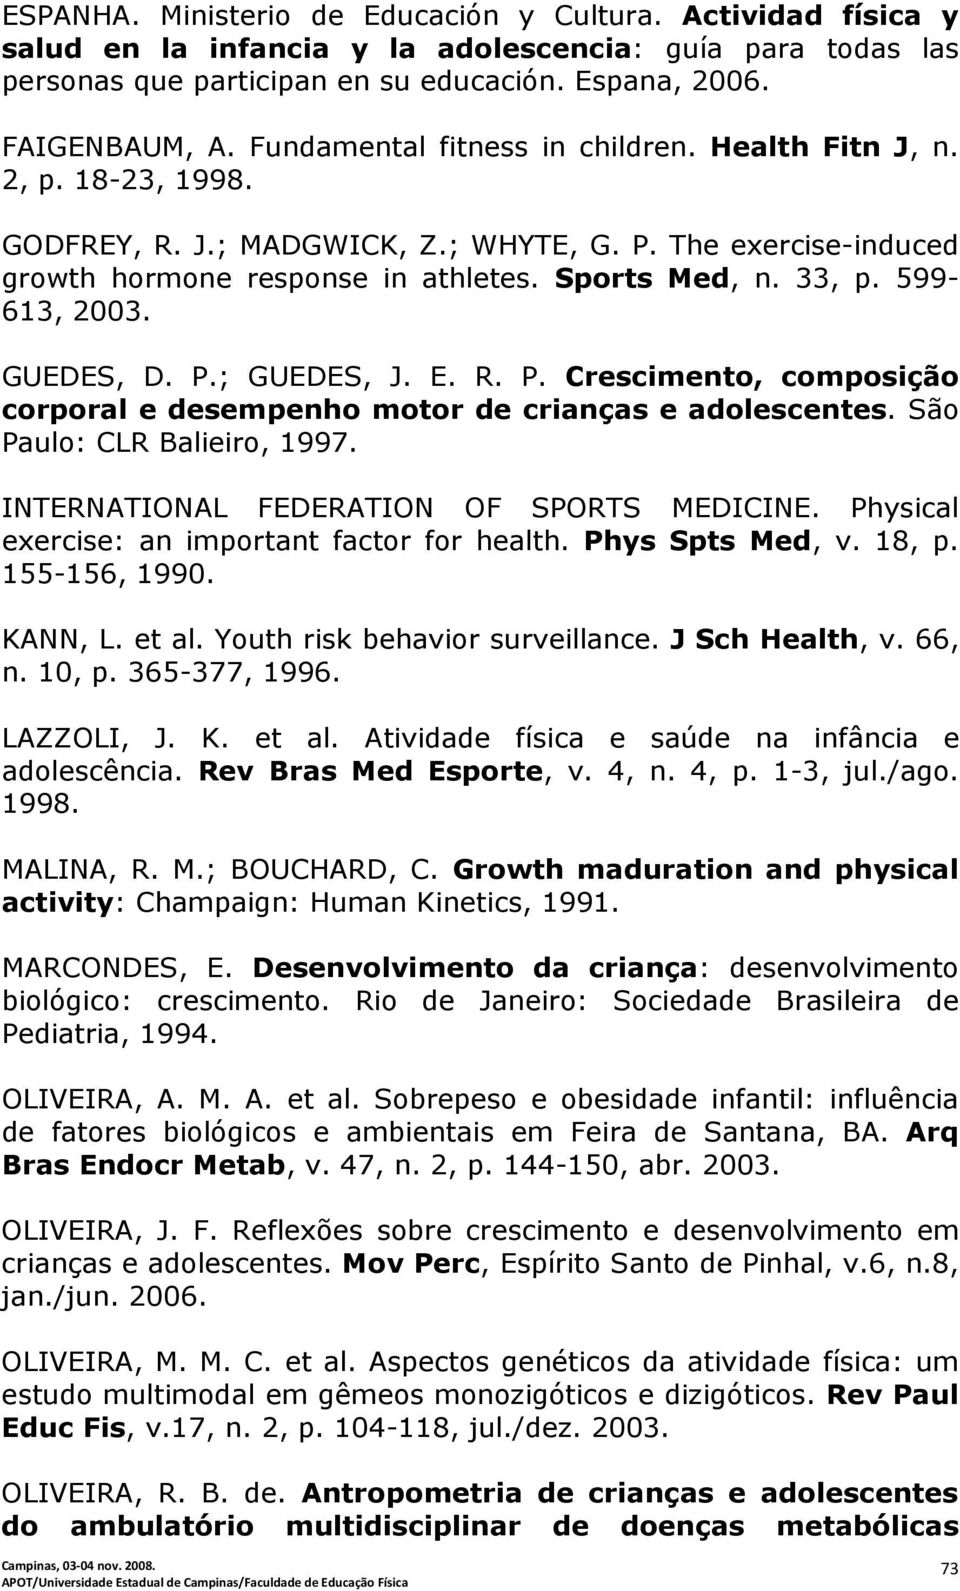 599-613, 2003. GUEDES, D. P.; GUEDES, J. E. R. P. Crescimento, composição corporal e desempenho motor de crianças e adolescentes. São Paulo: CLR Balieiro, 1997.